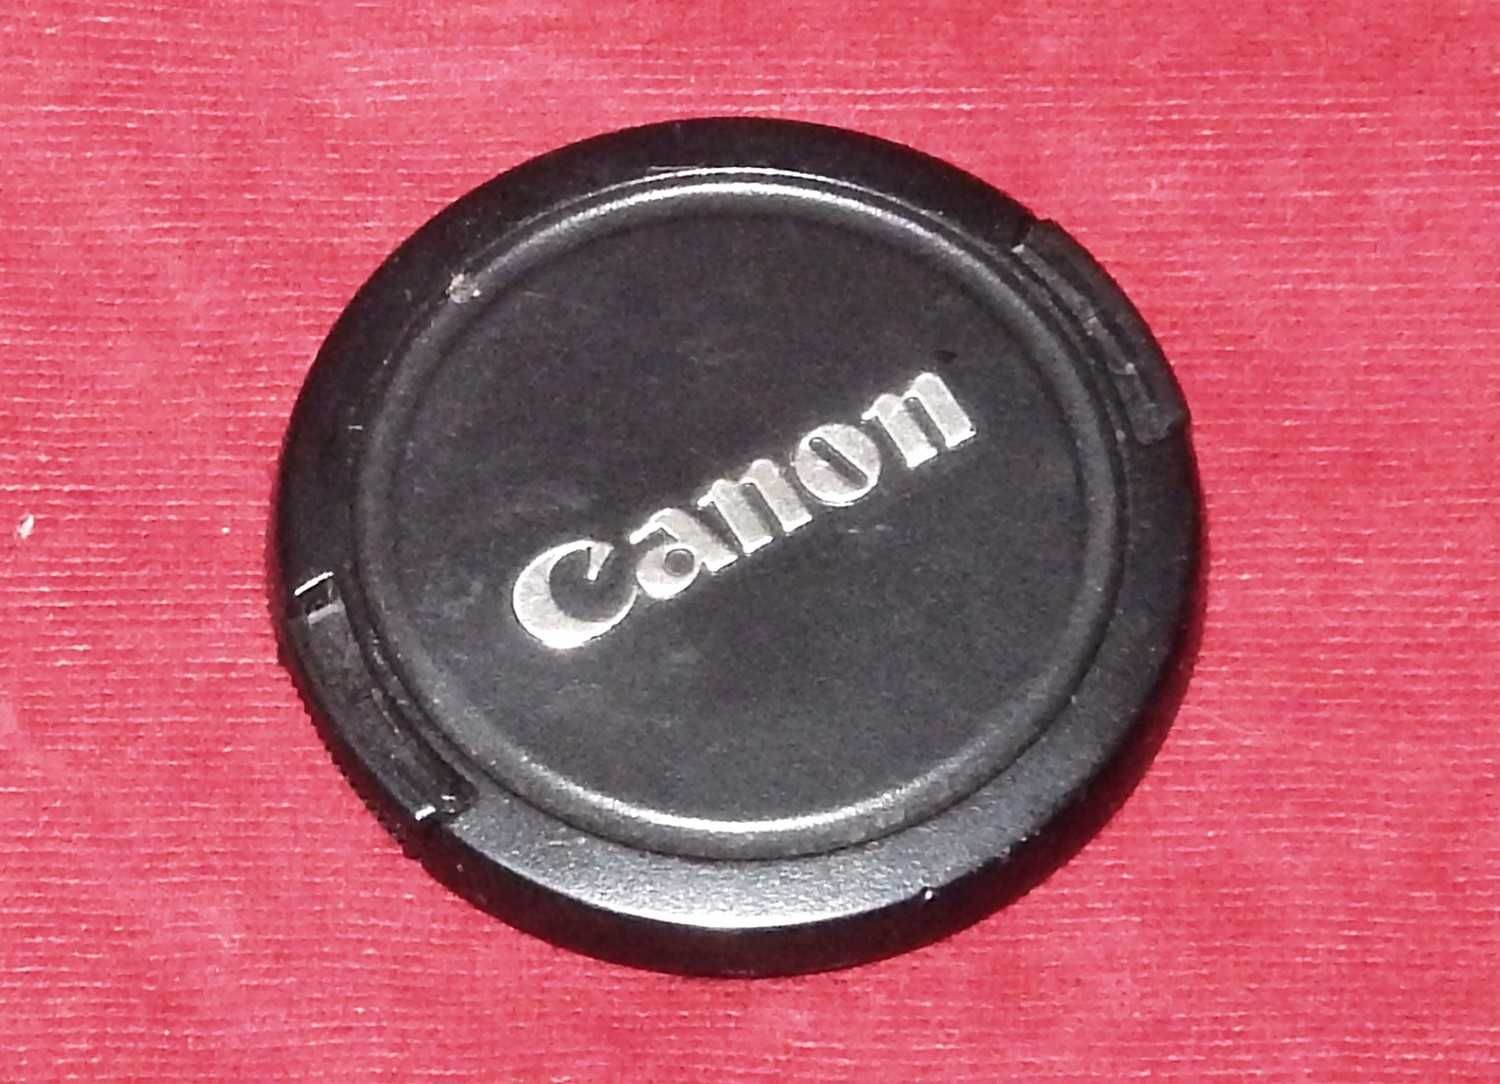 CANON - osłona obiektywu, pokrywa, dekielek z pazurkami  Fi/58